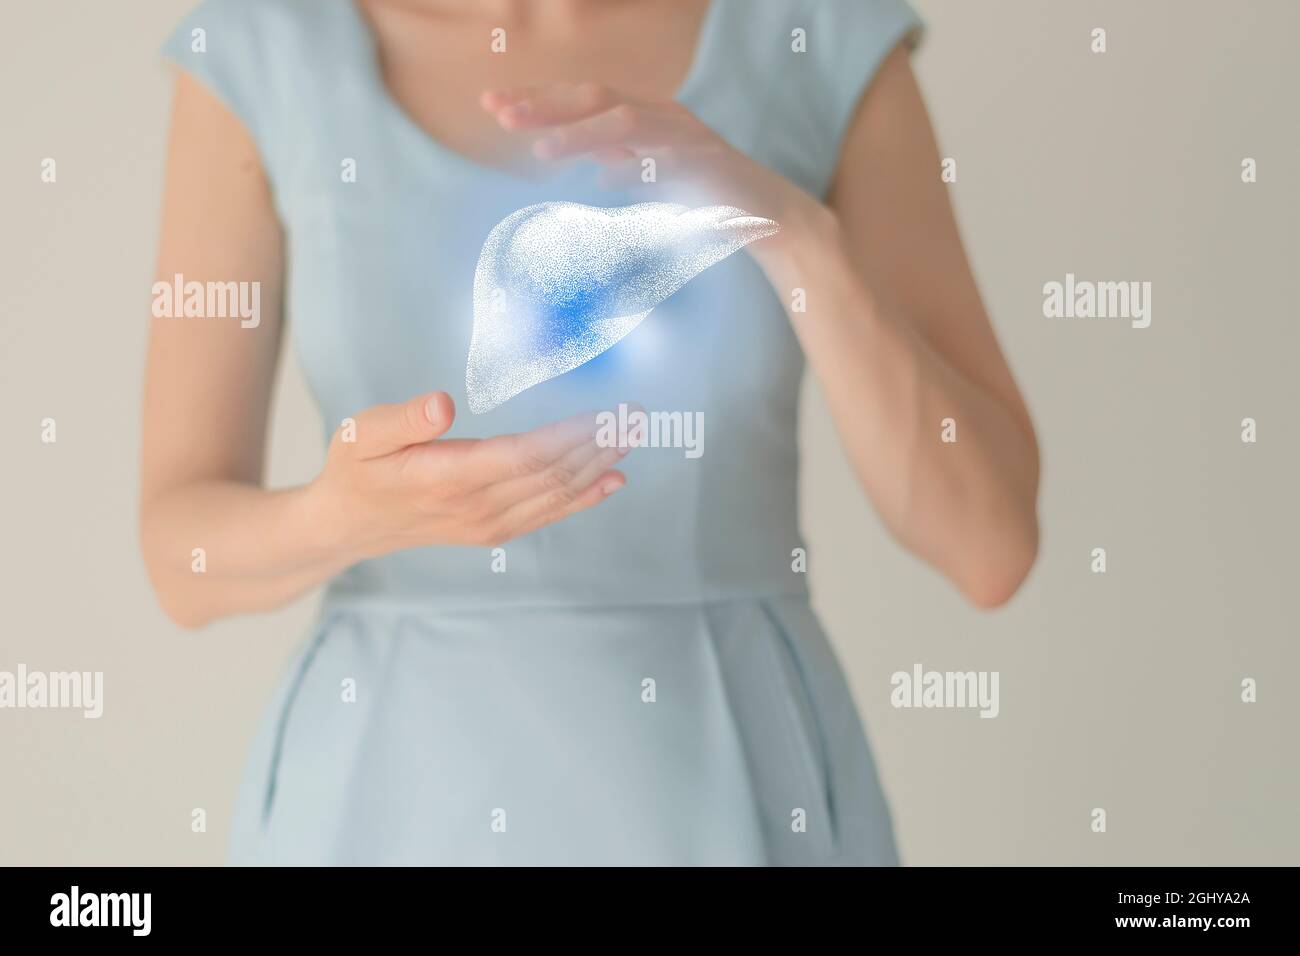 Paziente femminile irriconoscibile in abiti blu, evidenziato fegato di mano nelle mani. Concetto di problemi del sistema digestivo umano. Foto Stock